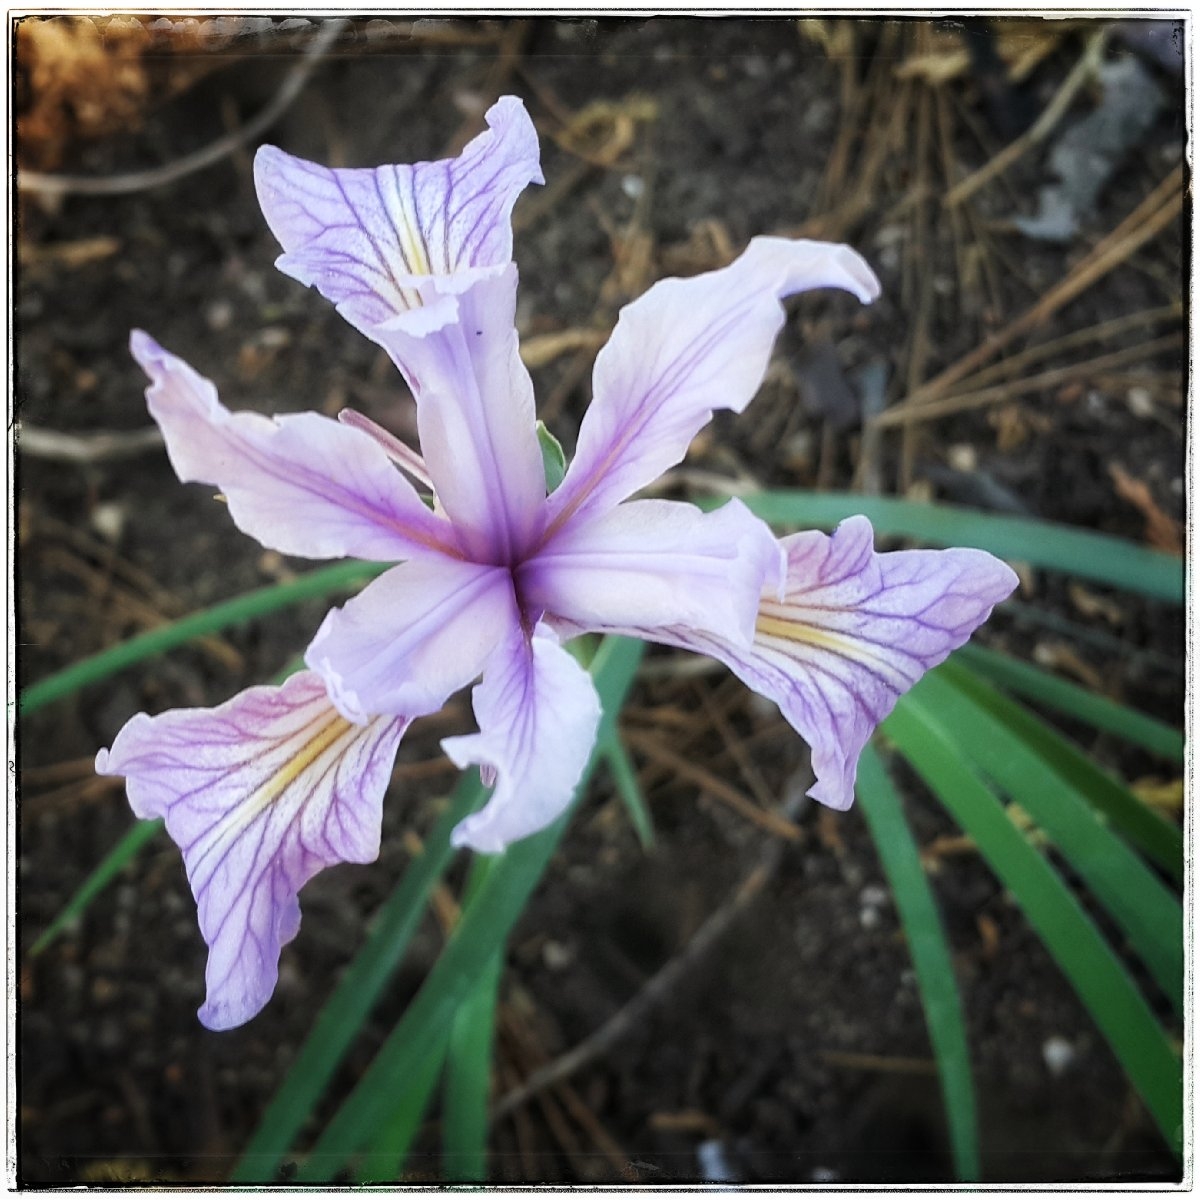 Iris hartwegii ssp. australis